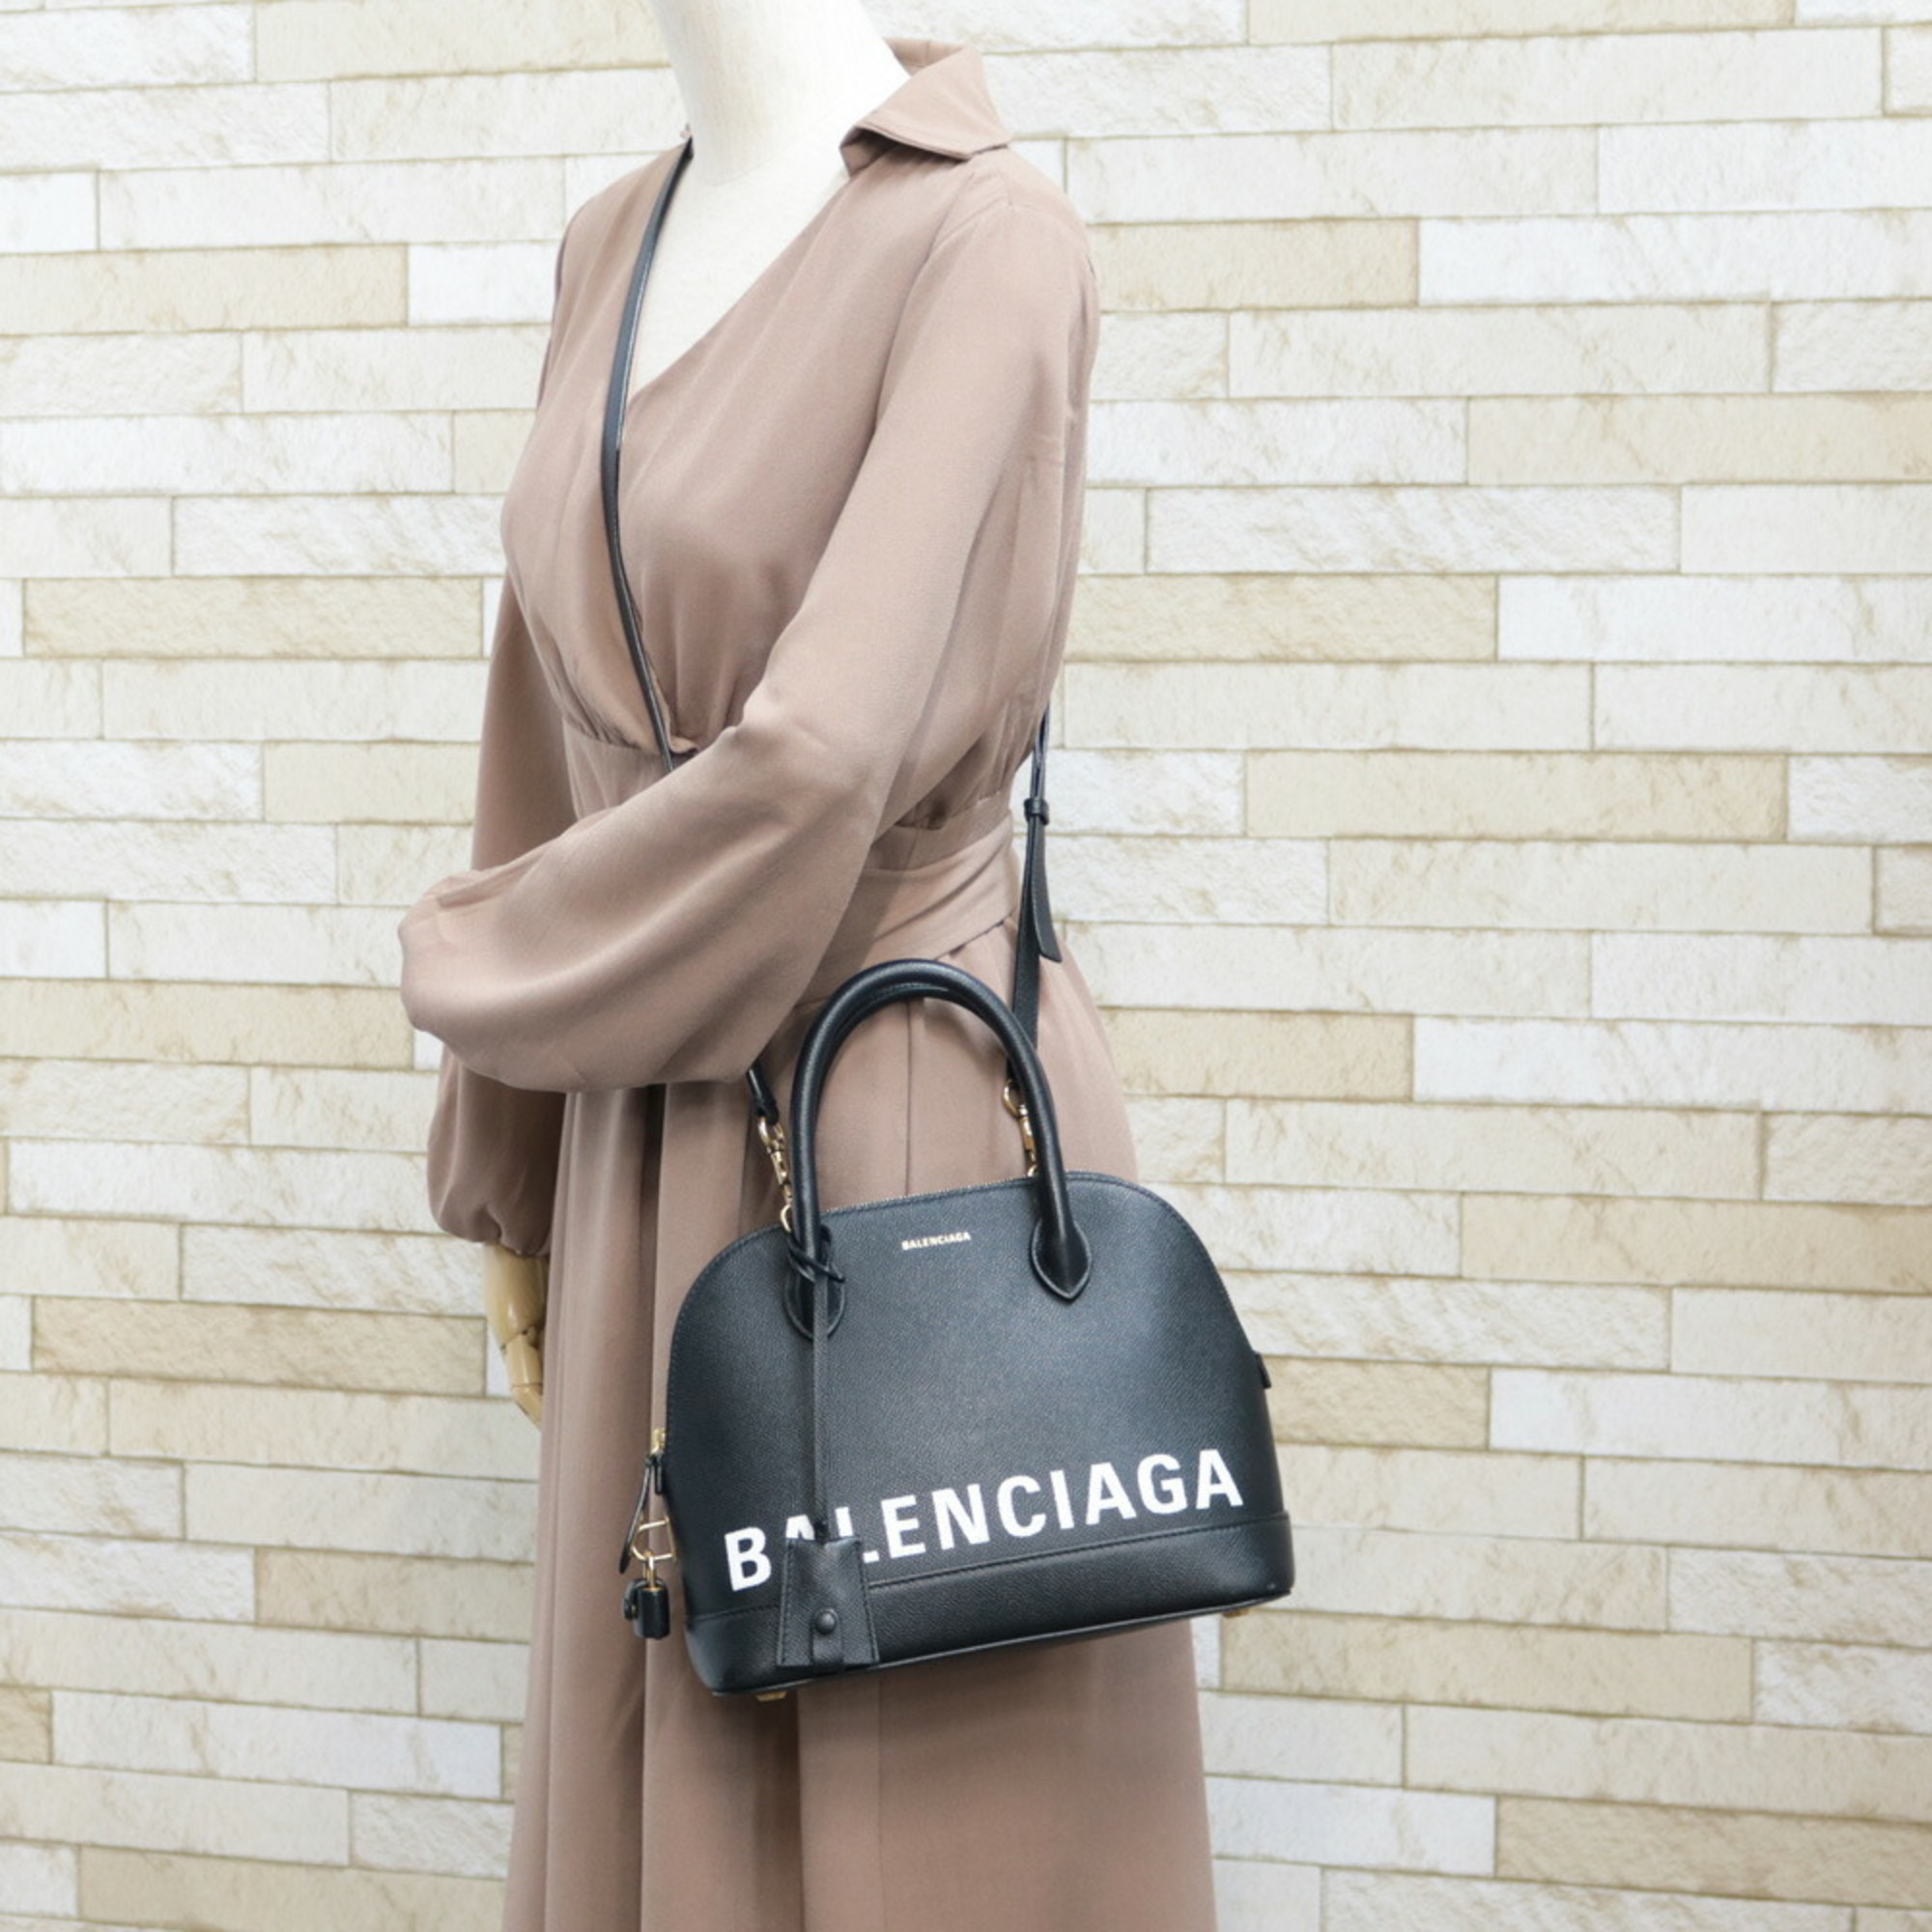 BALENCIAGA Balenciaga Shoulder Bag 2way Handbag Ville Top Handle S Black Women's Men's